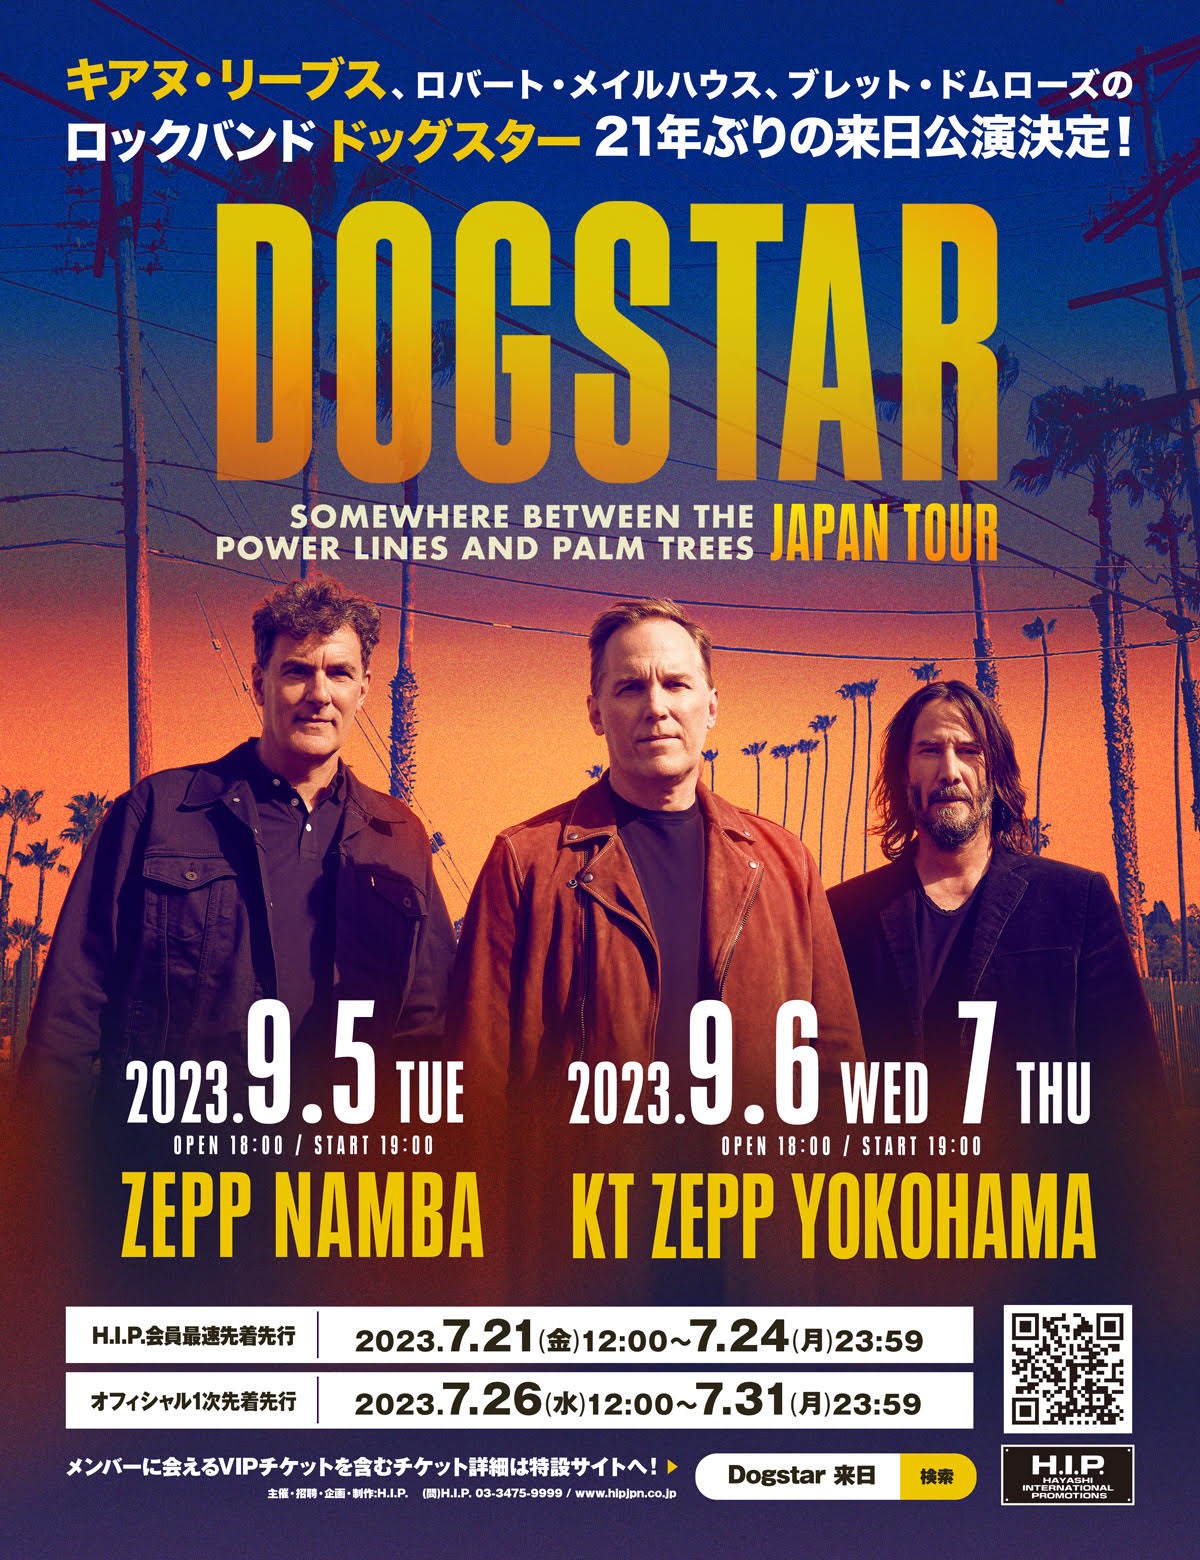 キアヌ・リーブスのロックバンド Dogstar の来日公演が9月に決定